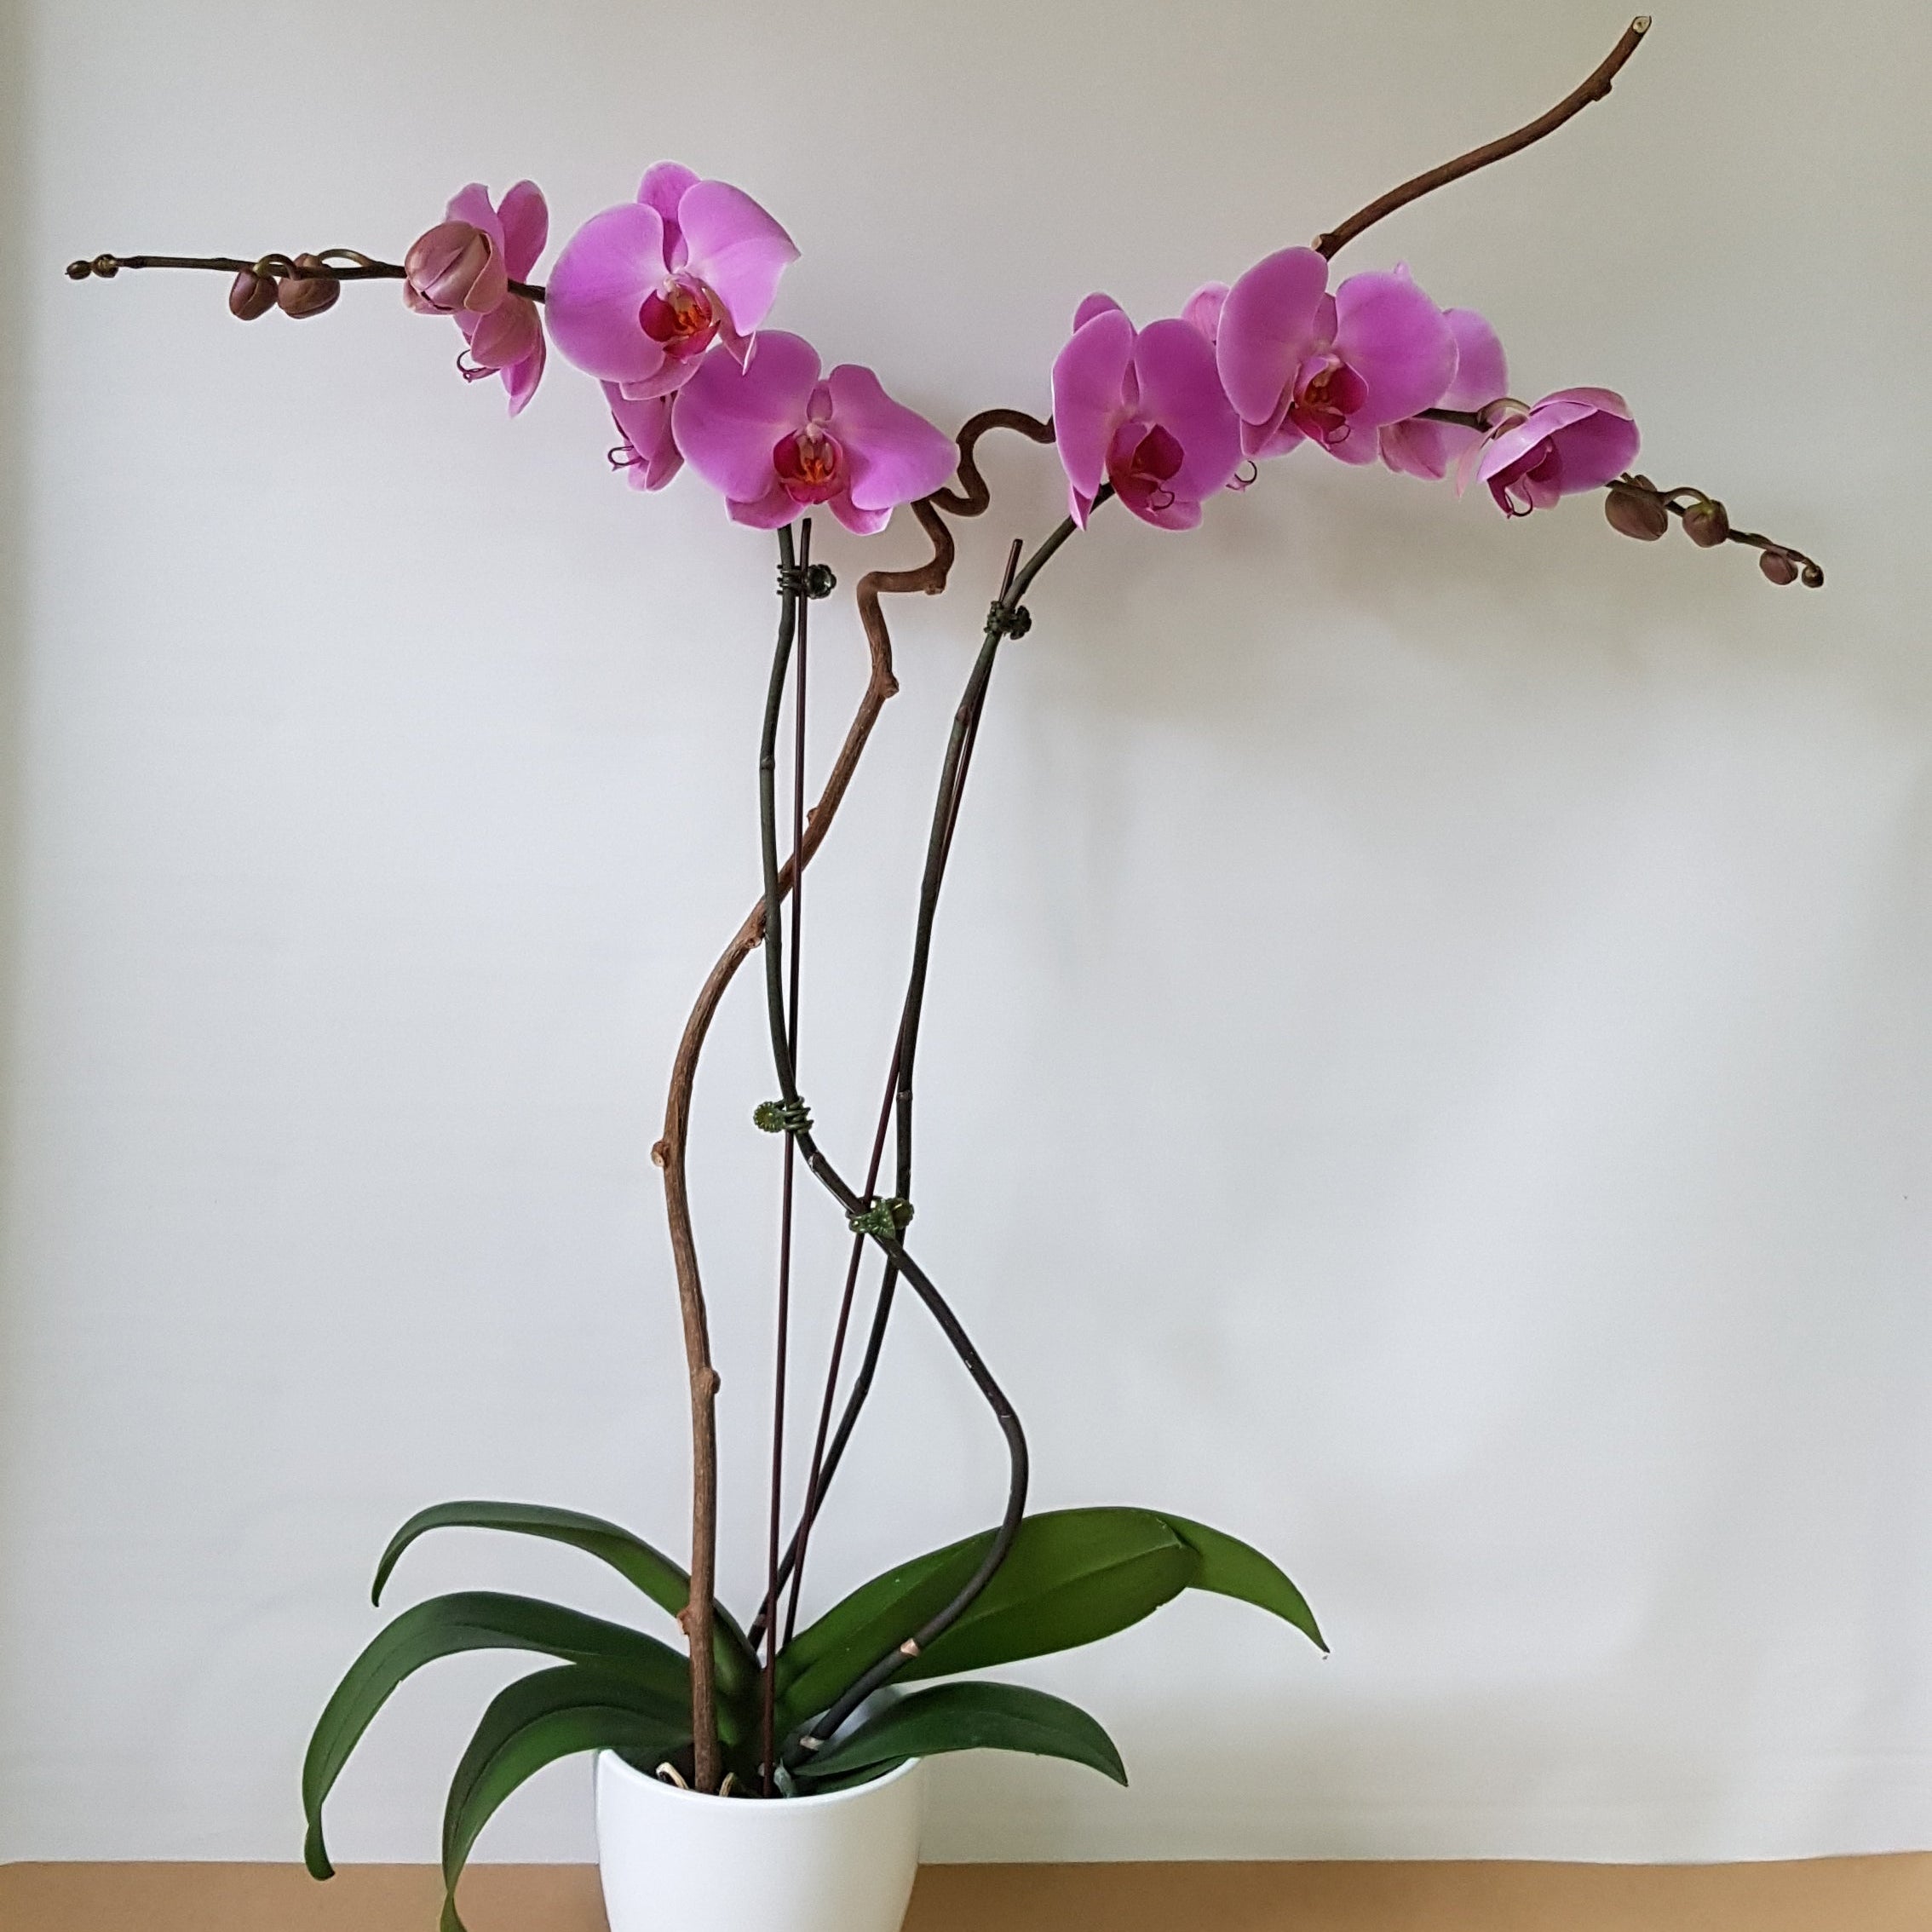 Double pink orchids - Immanuel Florist